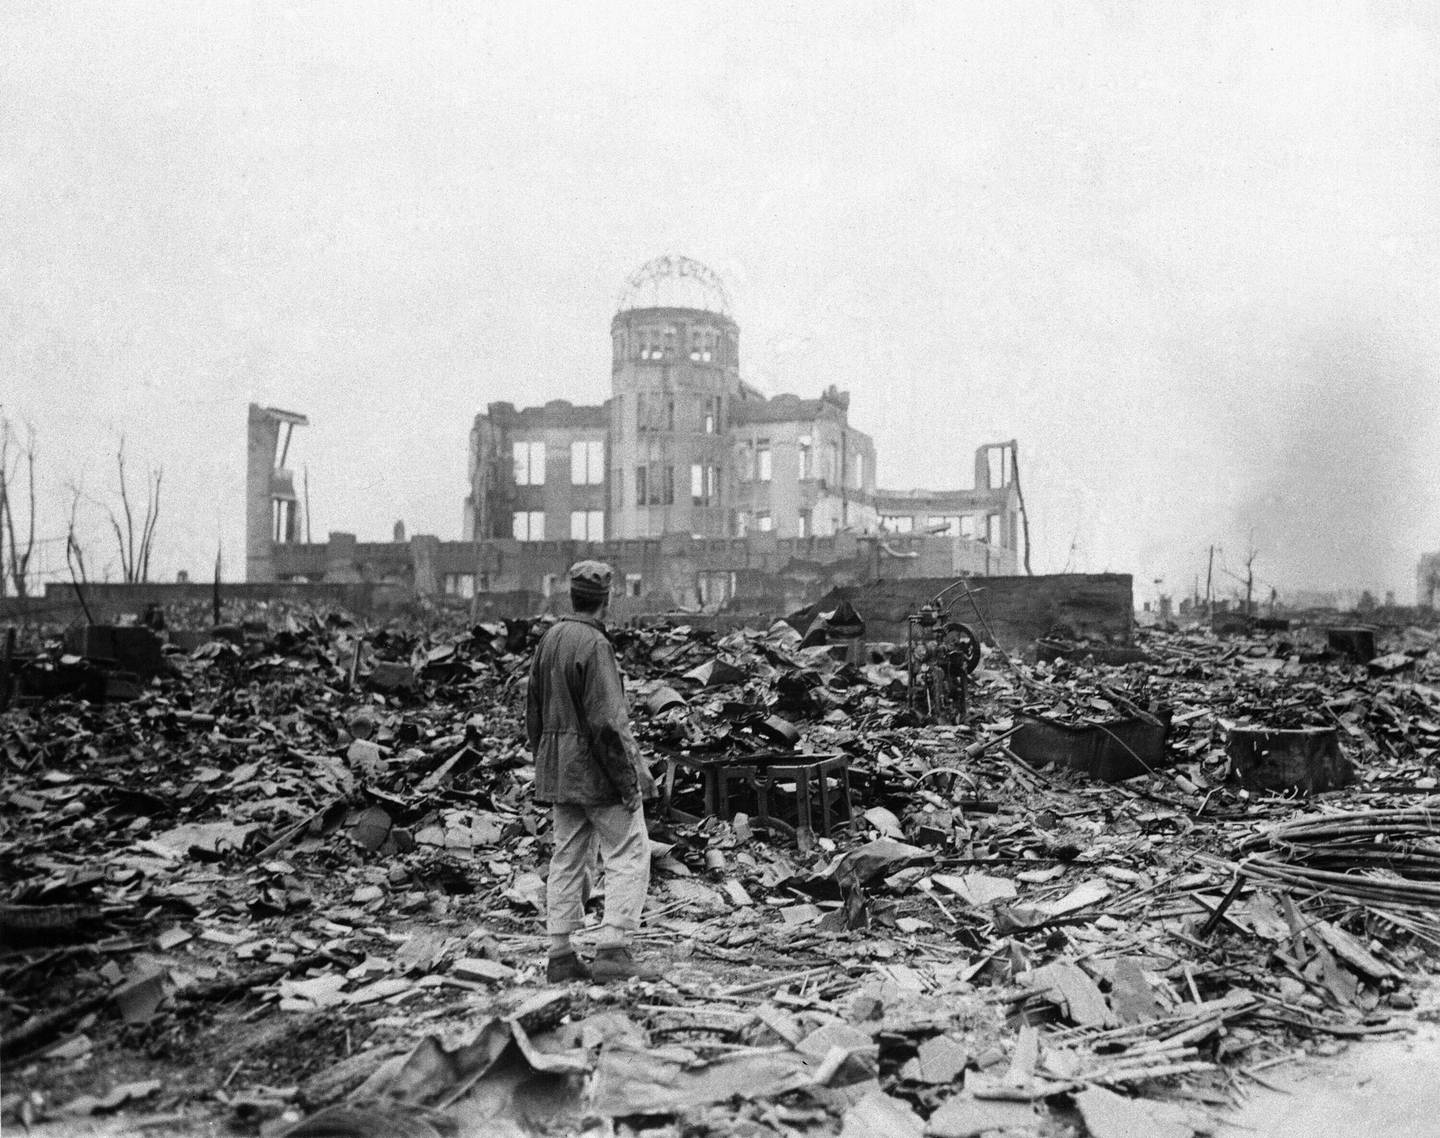 Atomvåpen er kun blitt brukt i august 1945, mot Hiroshima og Nagasaki. Konsekvensene var katastrofale. Her fra Hiroshima 8. september 1945, en måned etter angrepet.